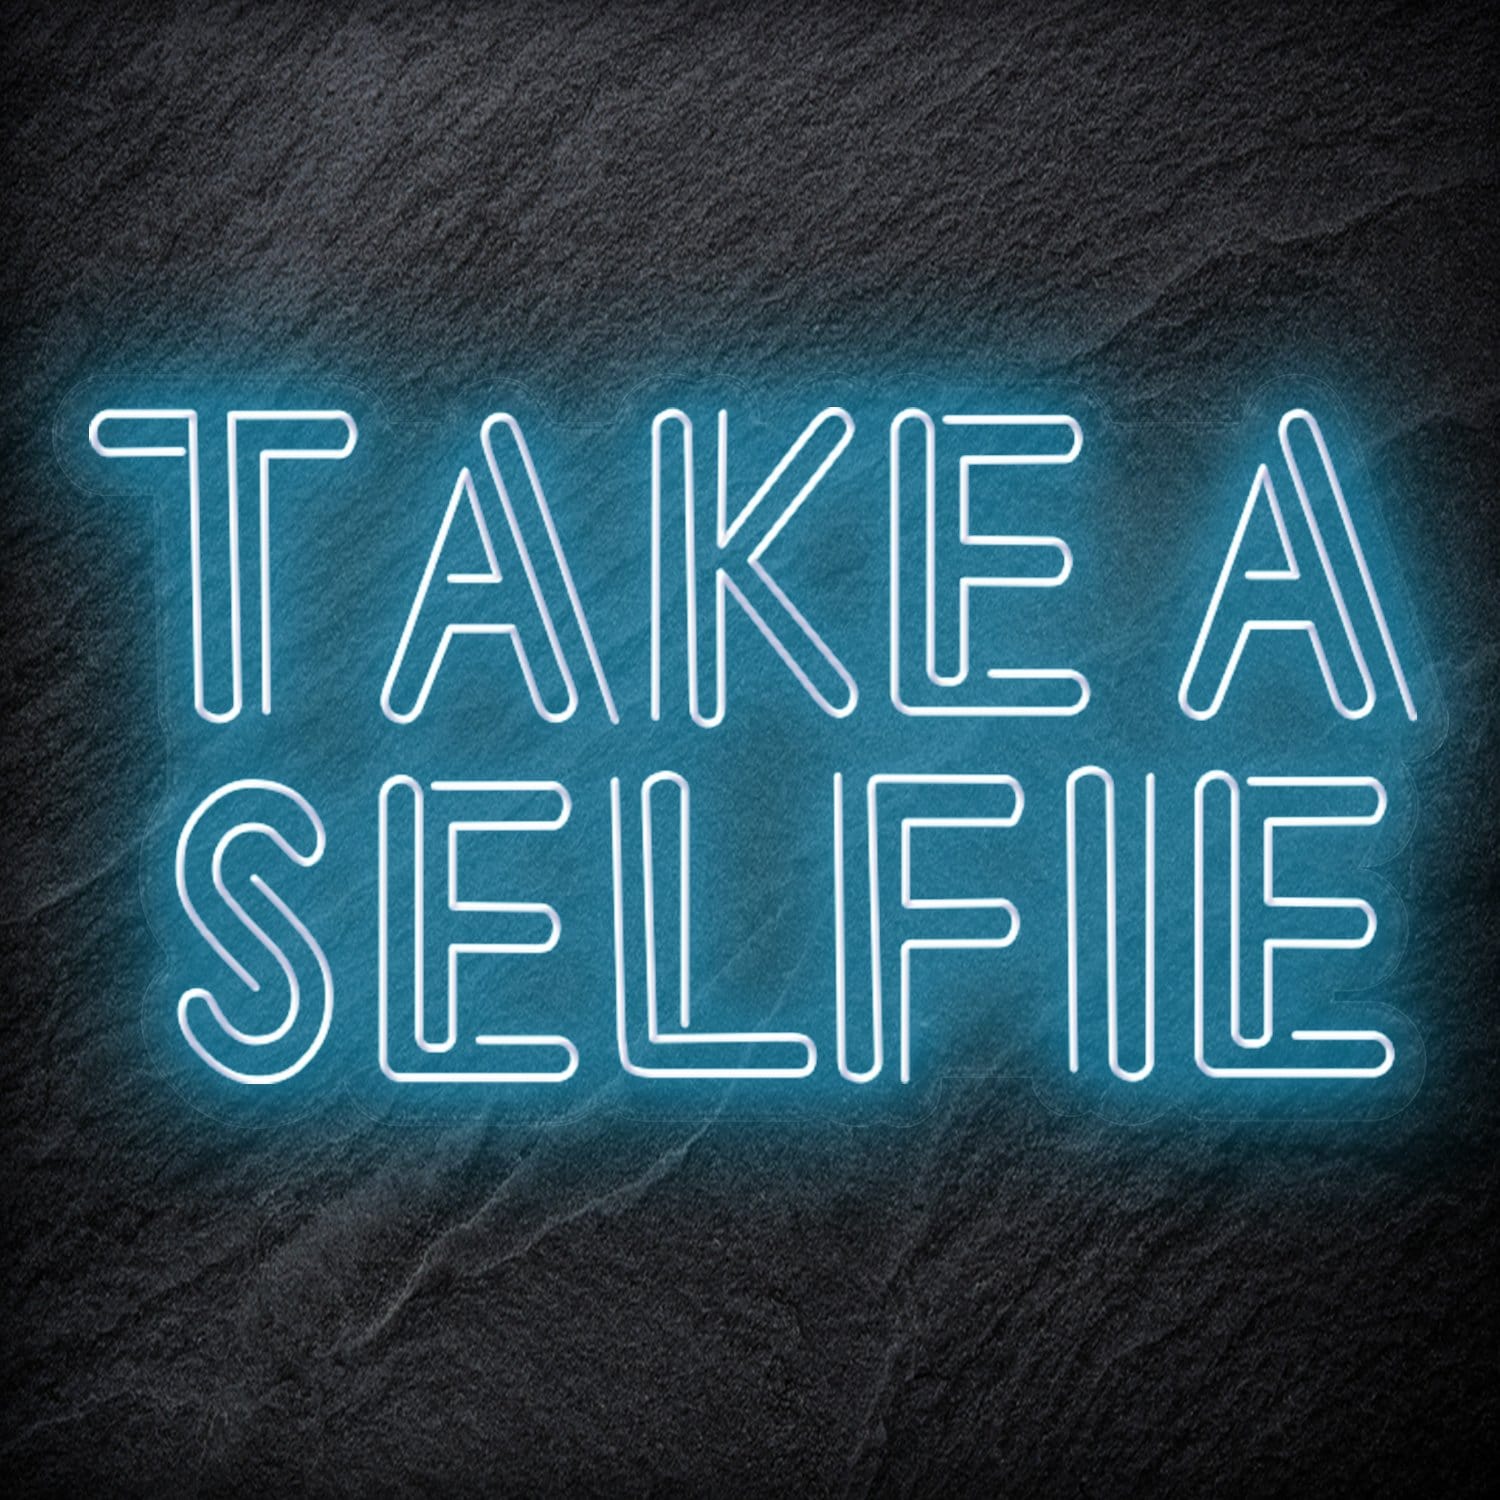 "Take A Selfie" LED Neon Schriftzug - NEONEVERGLOW